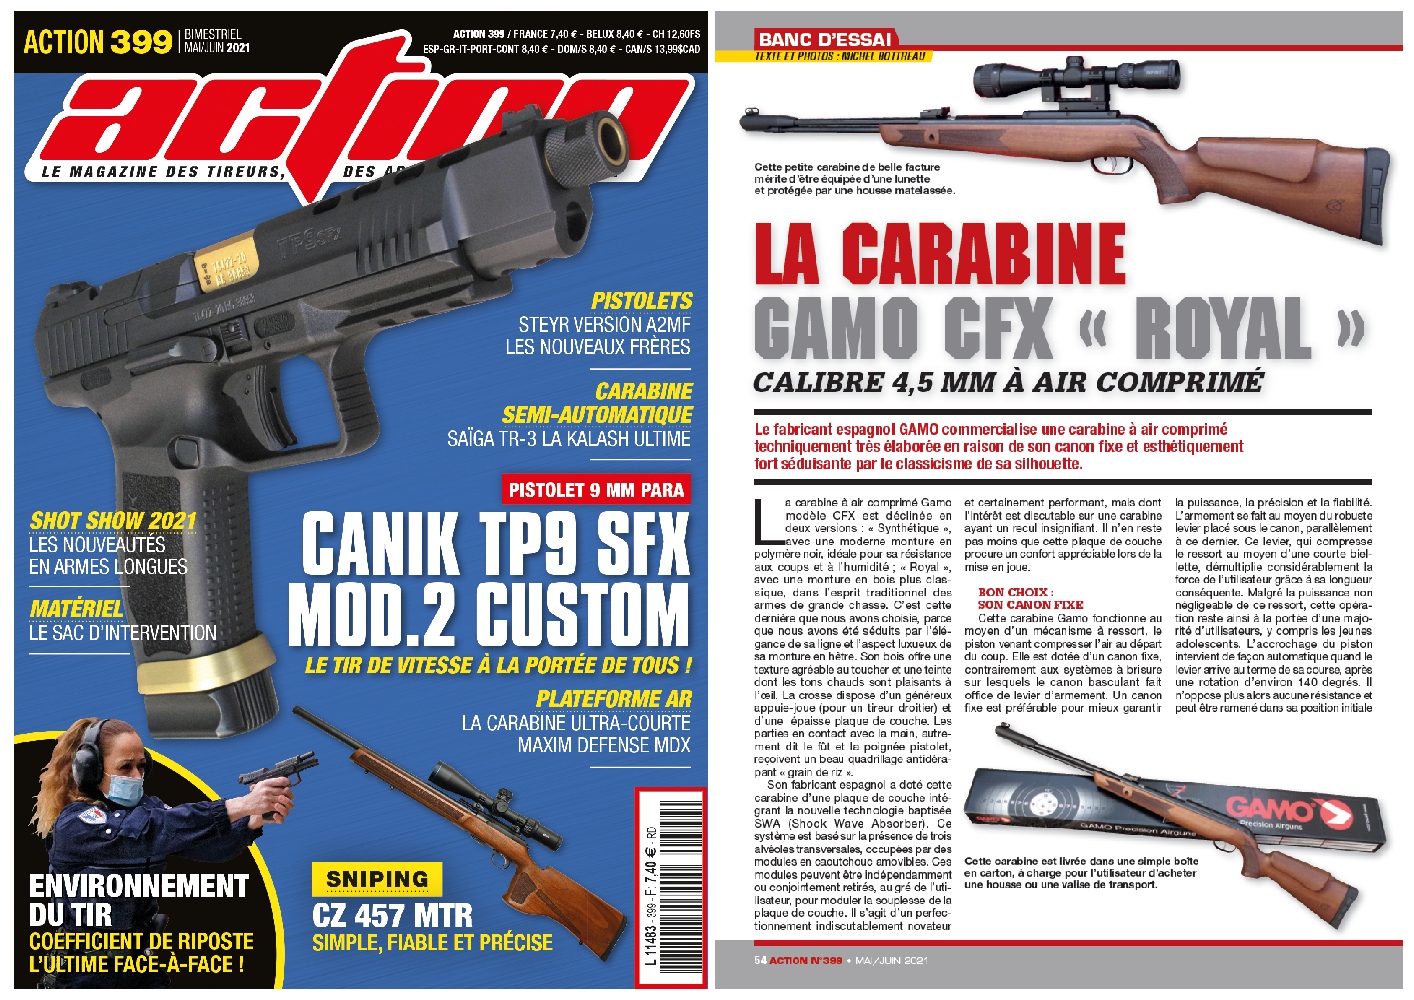 Le banc d’essai de la carabine à air comprimé Gamo CFX Royal a été publié sur 6 pages dans le magazine Action n°399 (mai-juin 2021). 